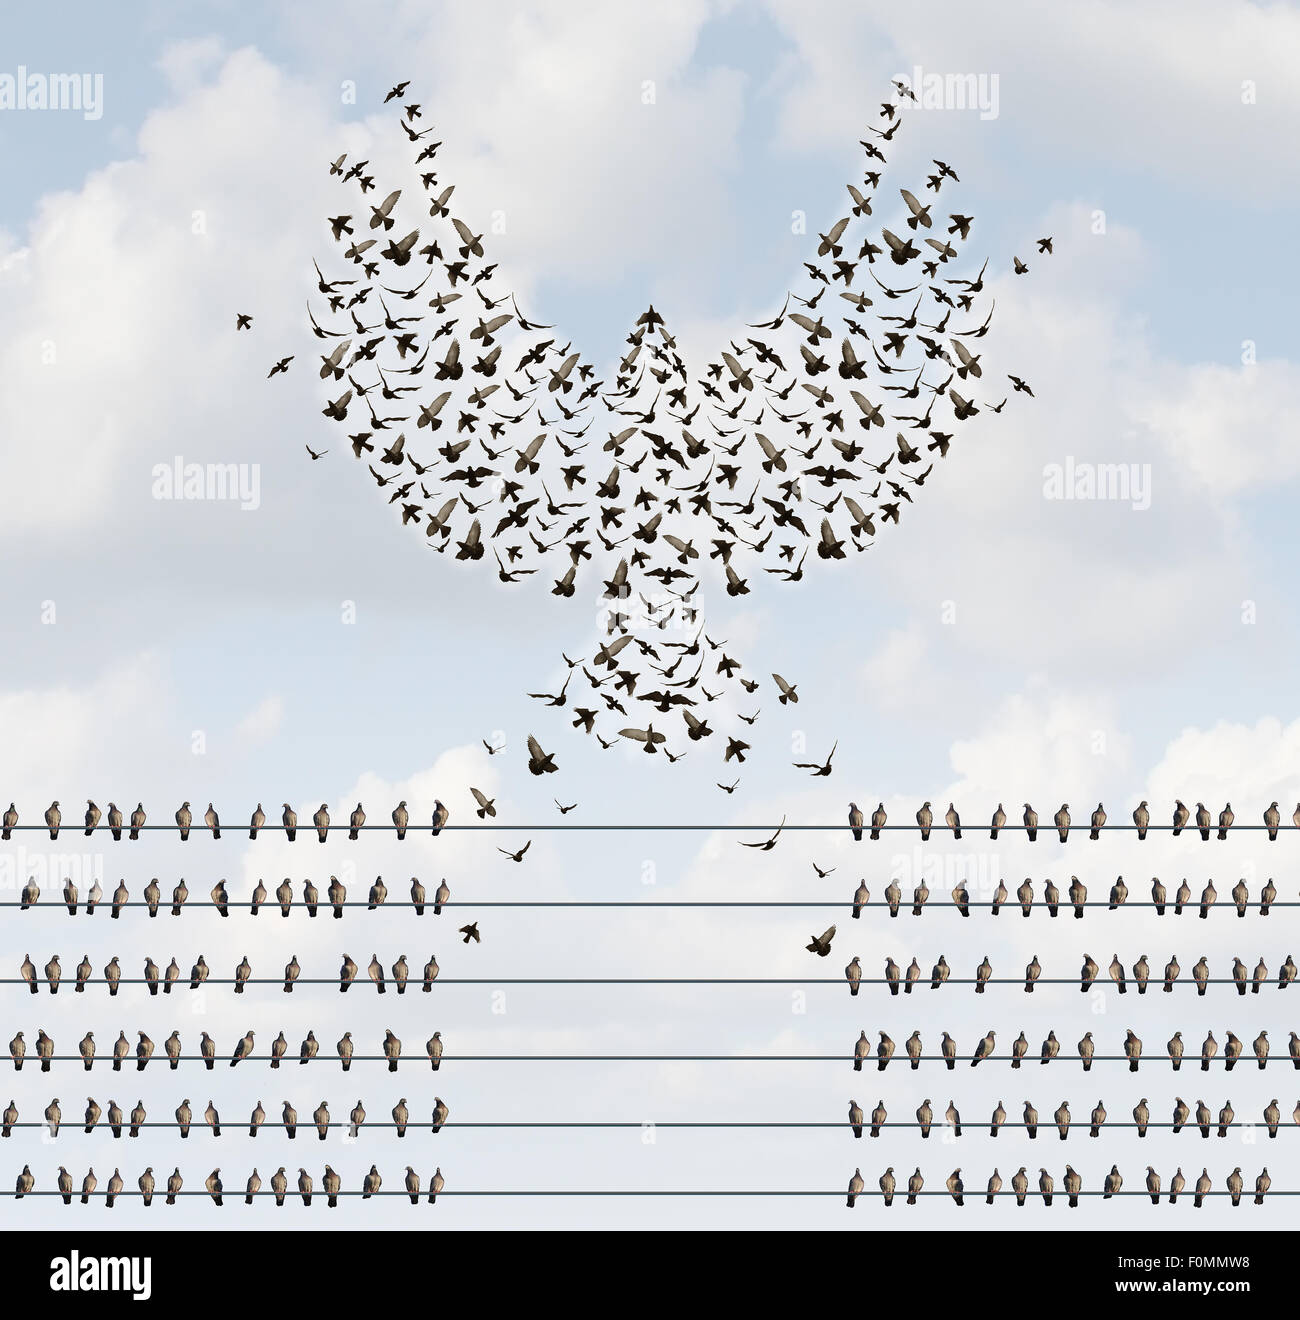 Réussite de l'organisation business concept comme un groupe d'oiseaux sur un fil avec une équipe s'envoler et formant un oiseau volant forme avec ailes ouvertes comme une métaphore pour le courage de créer de nouvelles opportunités. Banque D'Images